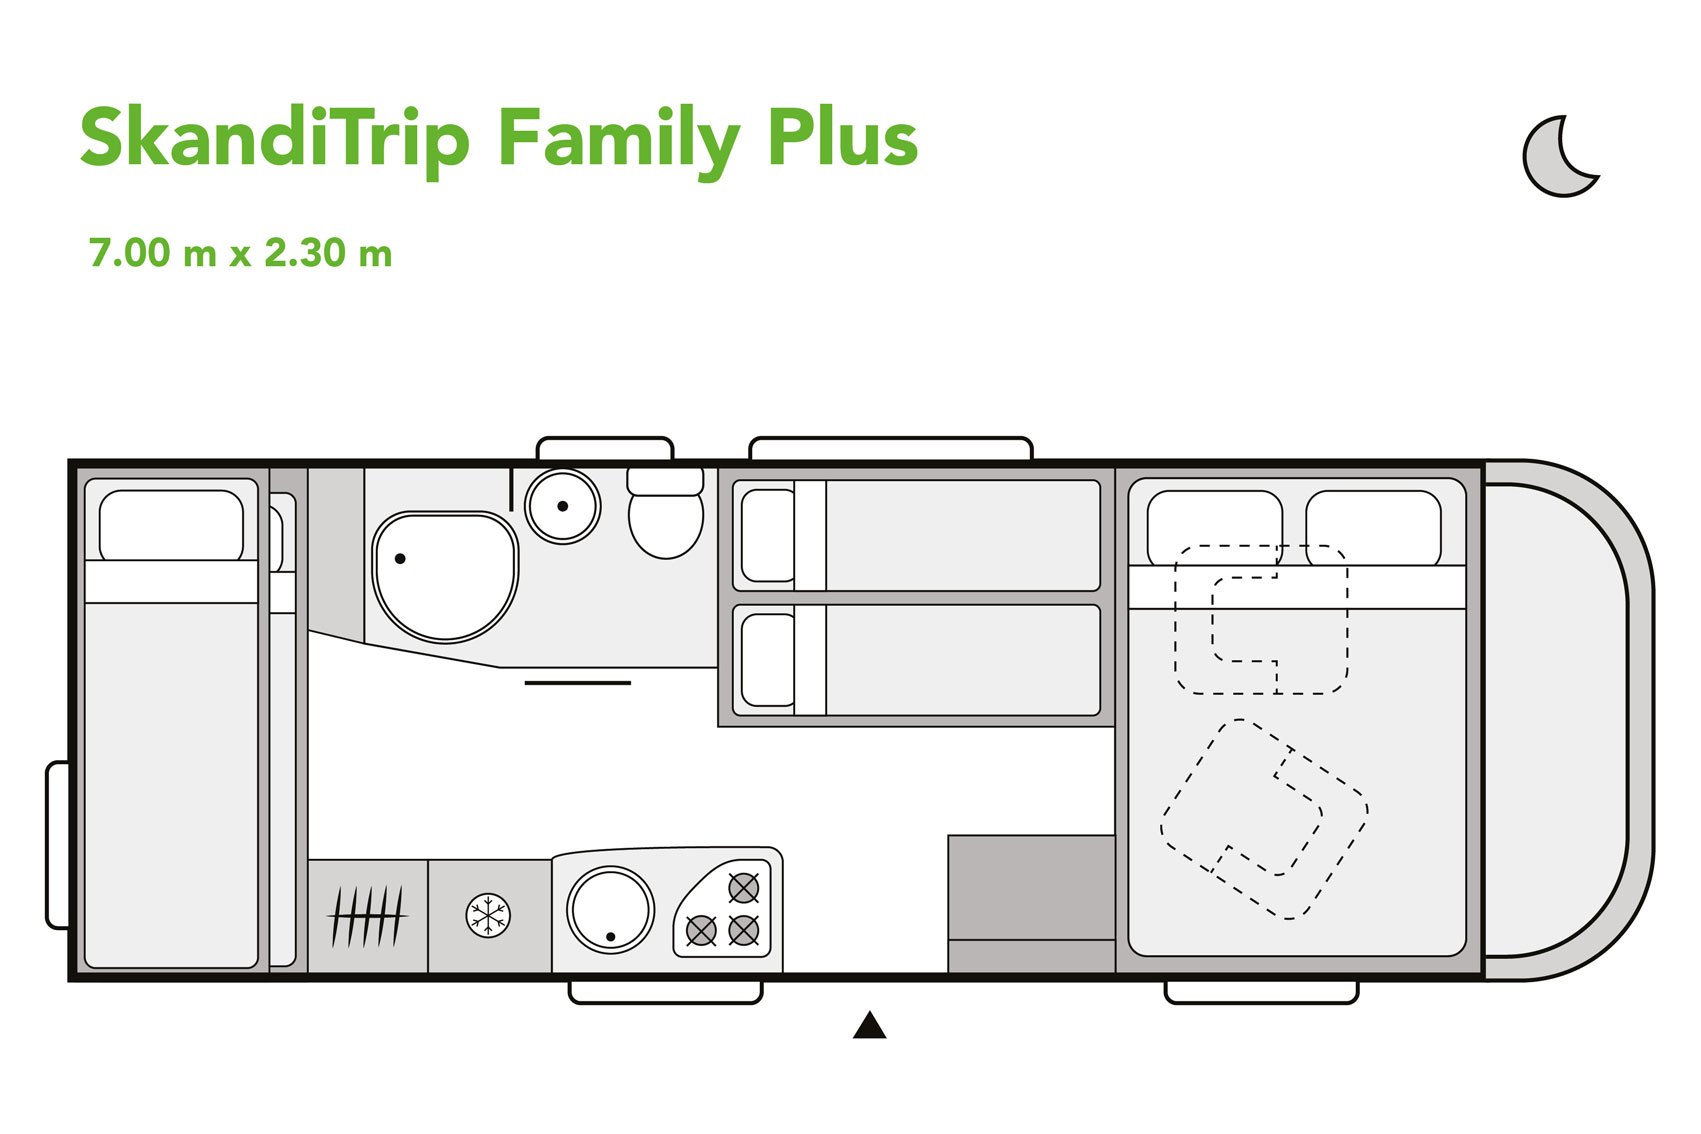 SkandiTrip family plus motorhome daytime blueprint